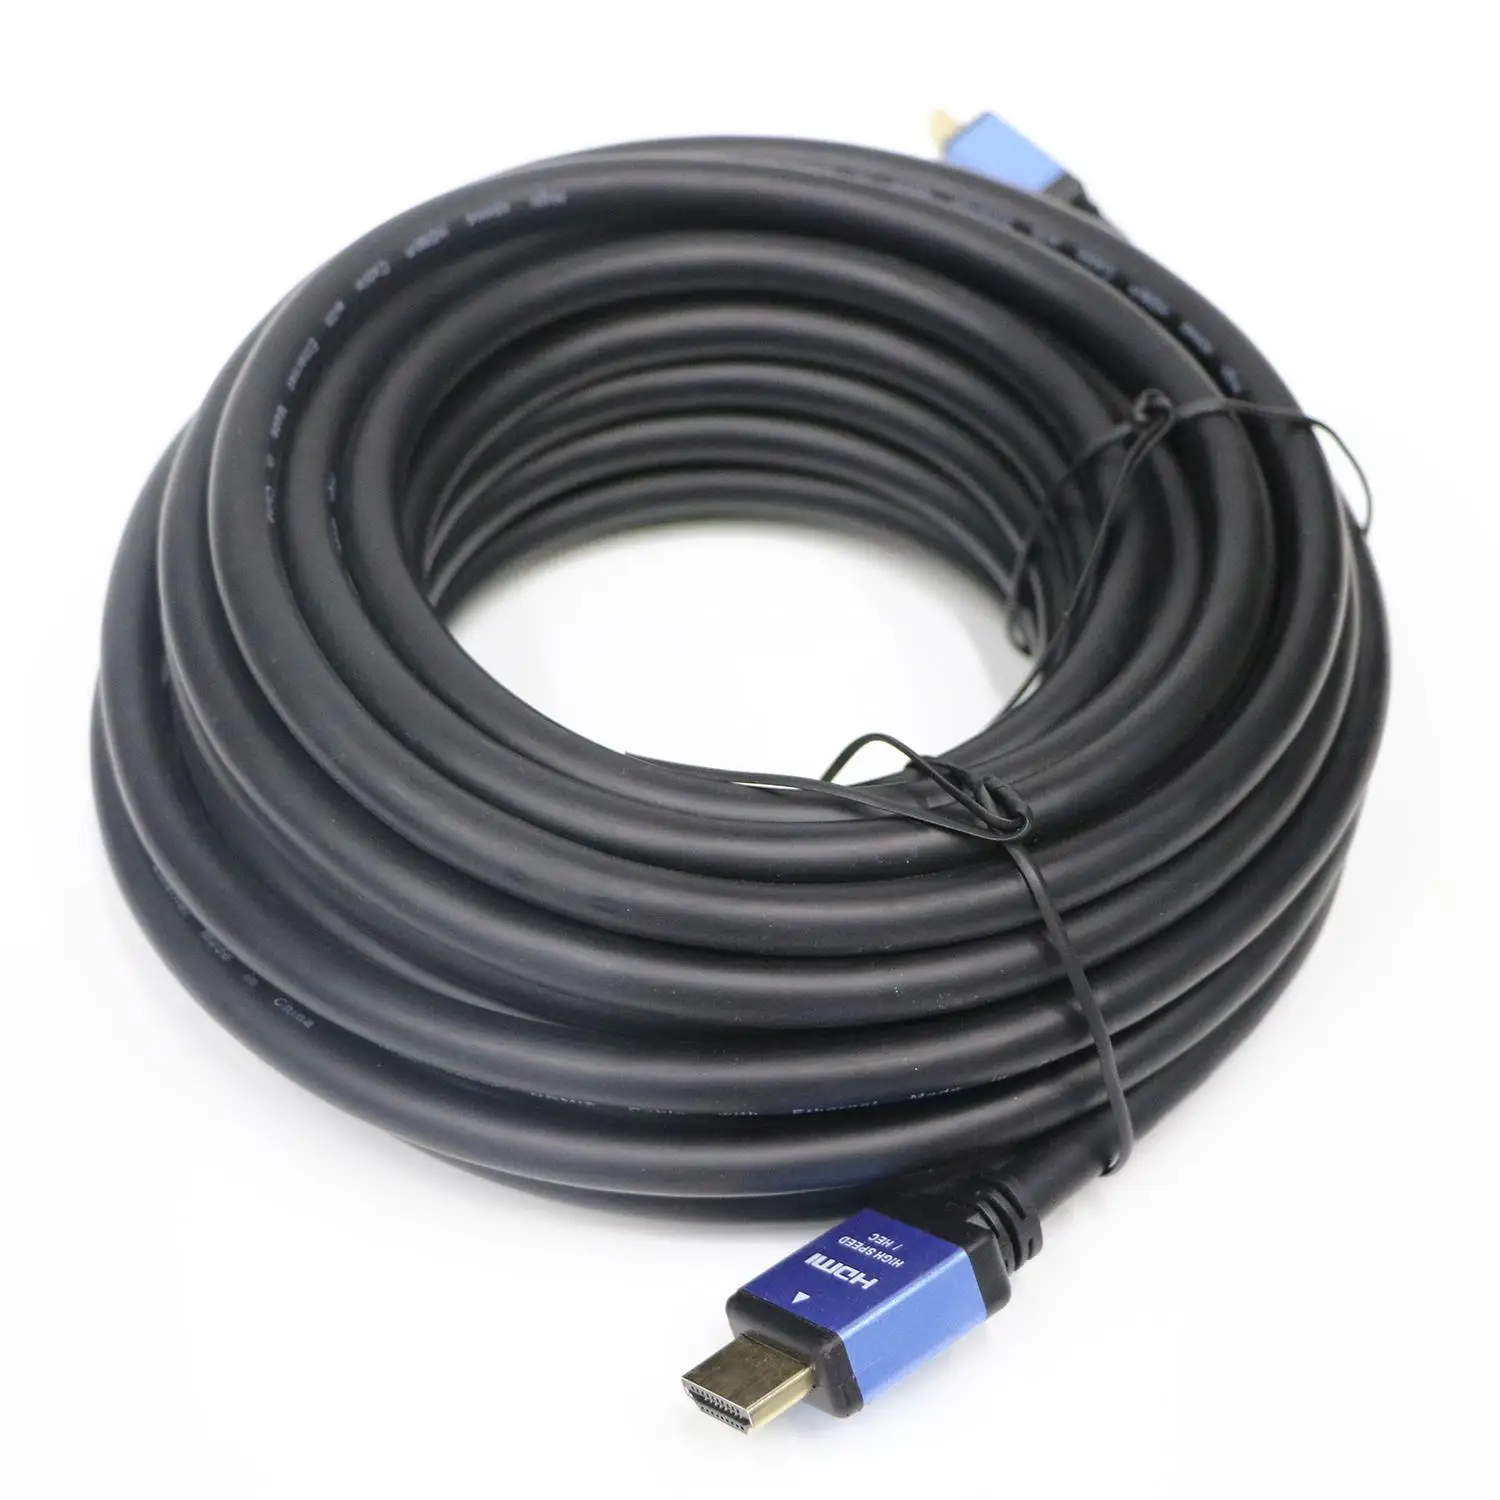 Топ предложения HDMI кабель версии 2,0 4 к * 2 60 Гц (Совместимость с 3D, 1080 P) видеокабель HD 10 м материал медь